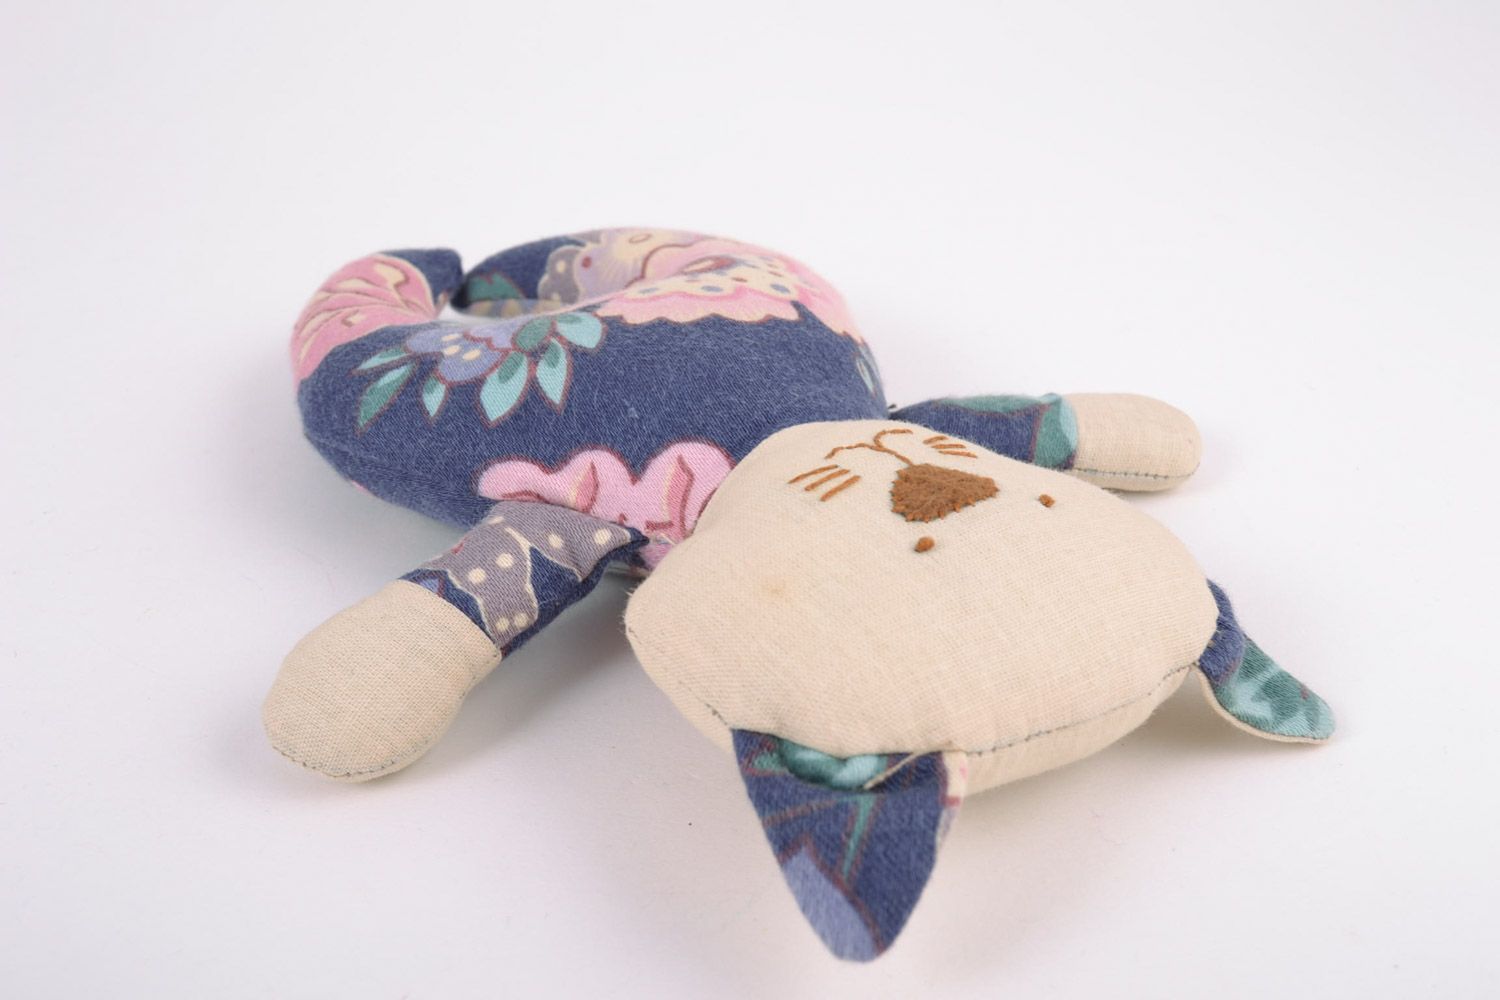 Textil Kuscheltier Kater blumig aus Baumwolle schön handmade Spielzeug für Kinder foto 4